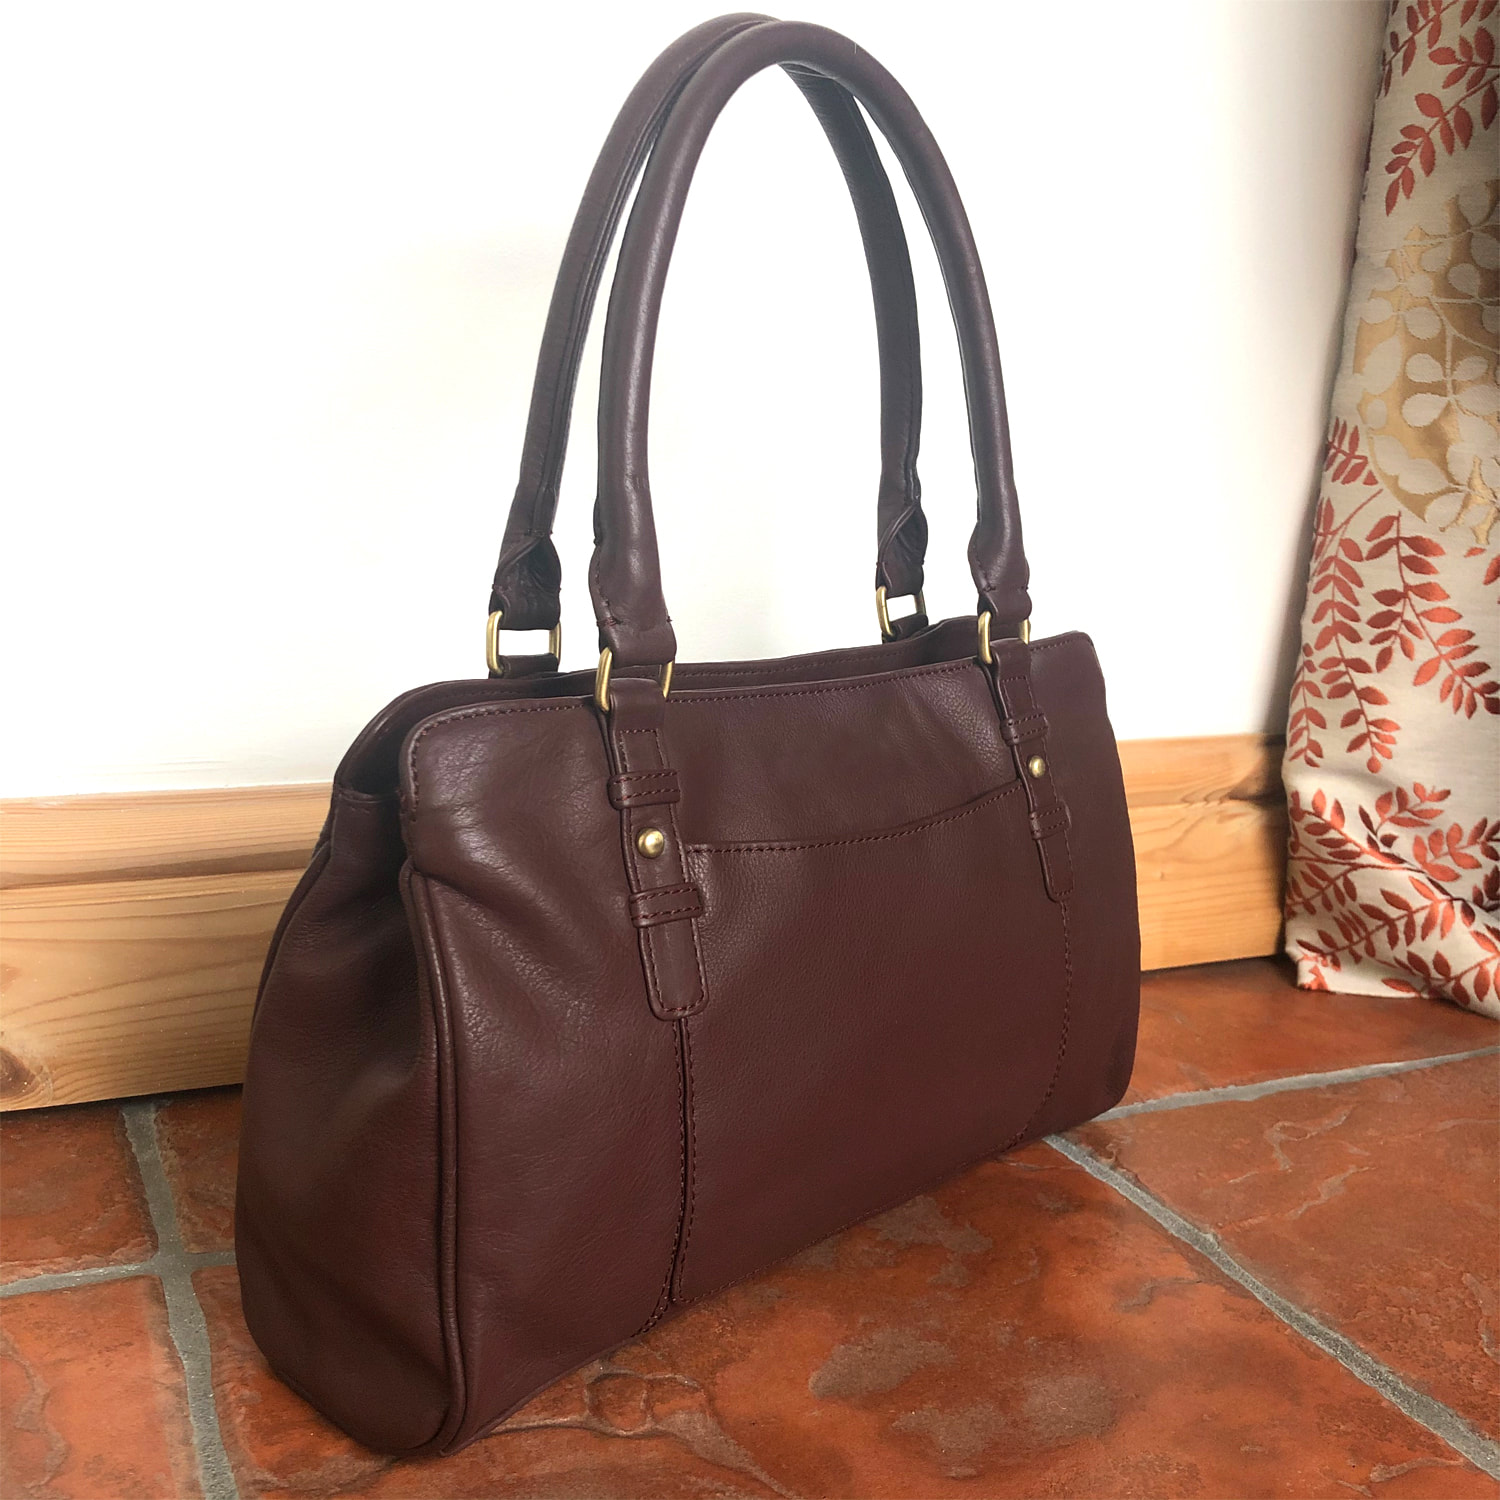 Brown Leather Shoulder Bag, Handbag - SALE